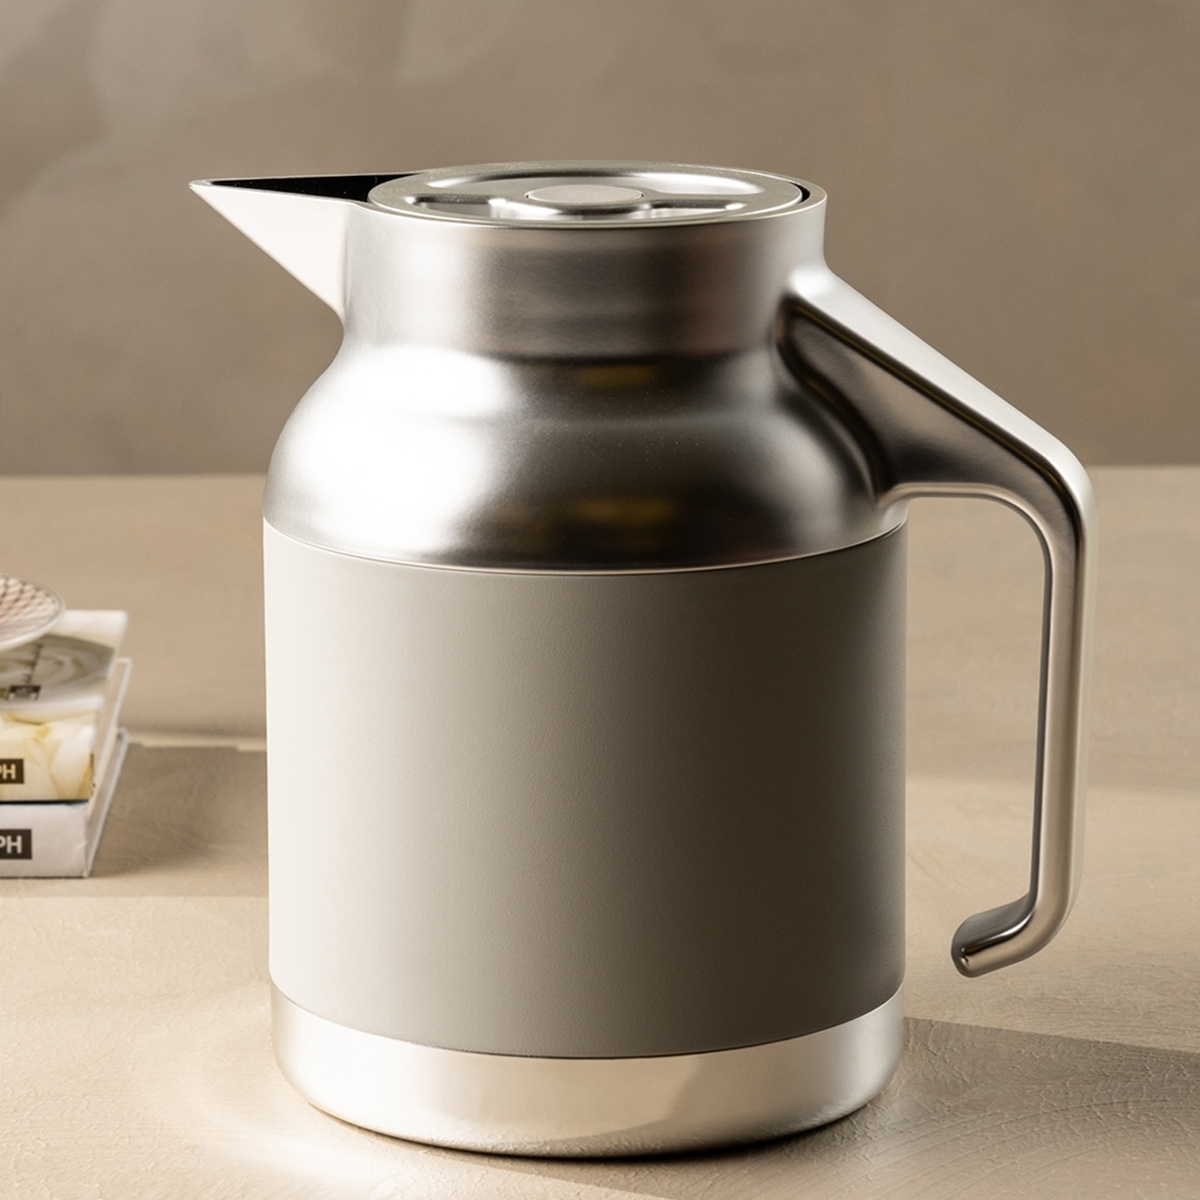 Buy Nova tea server stainless steel d/w silver & grey 1. 5 ltr in Kuwait